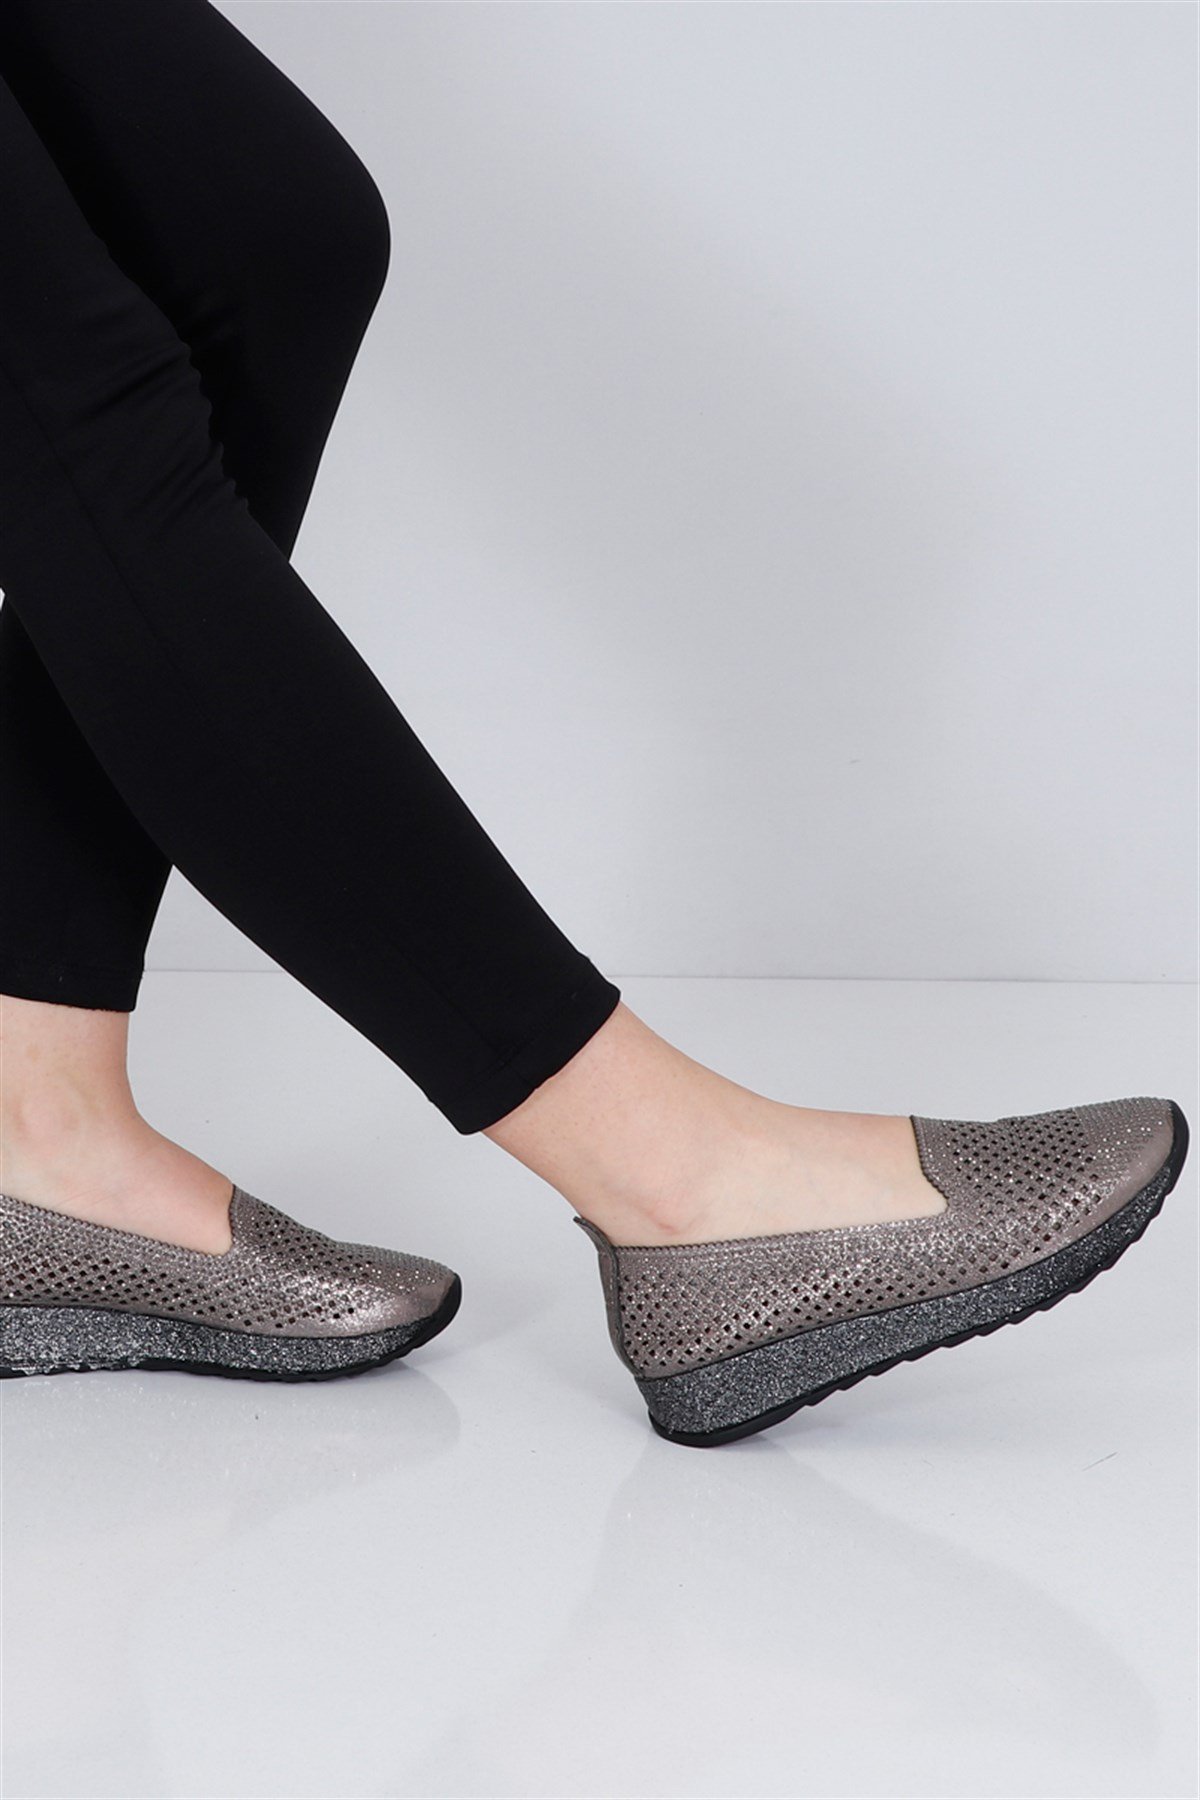 Platin simli Dolgu Topuk Kadın Ayakkabı Lazerli 2020 Fiyatı ve Modelleri